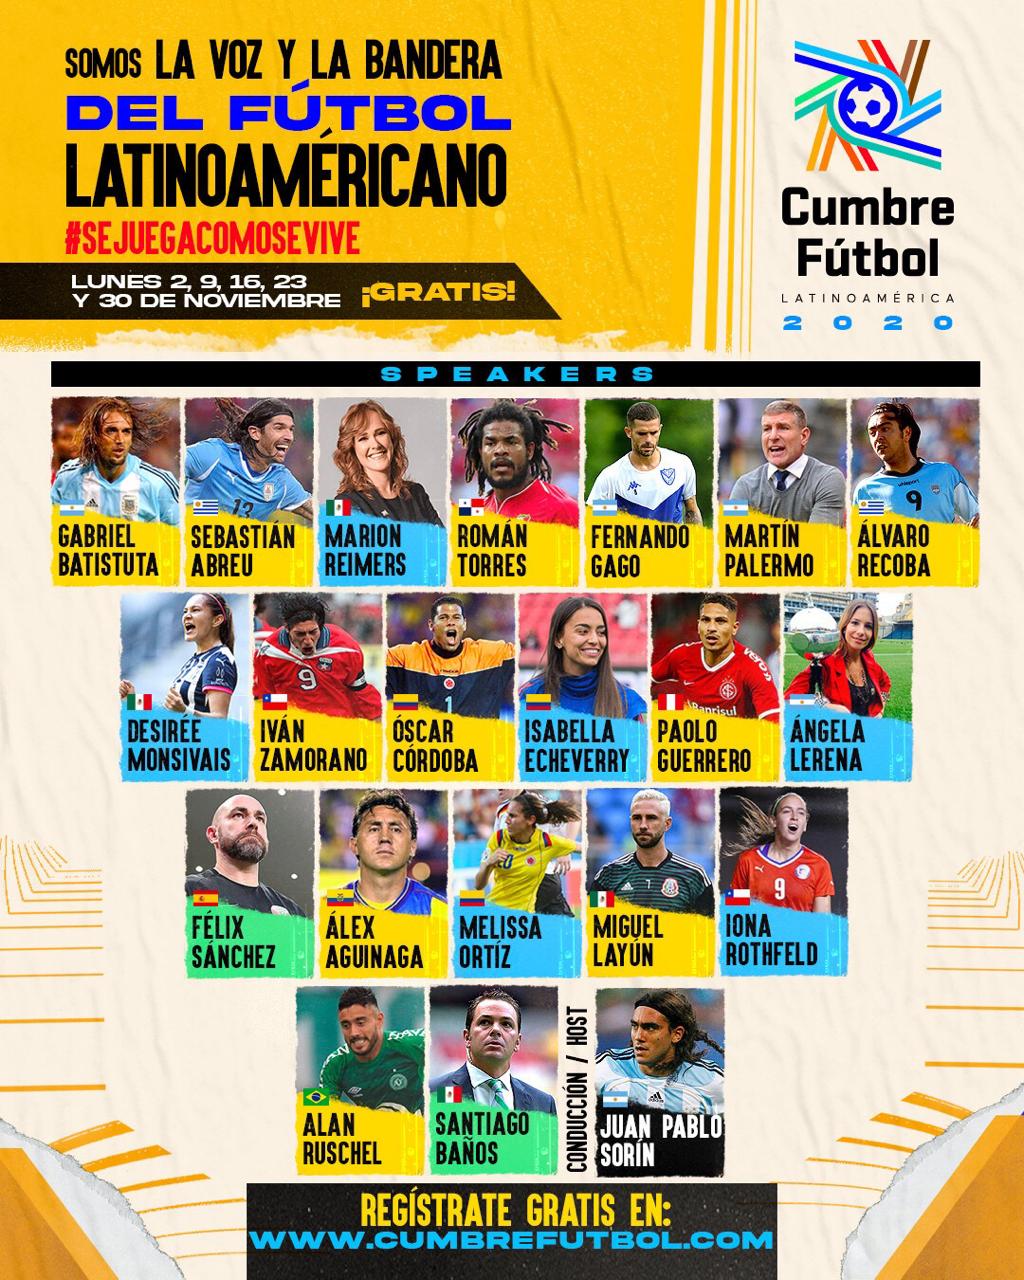 Cumbre Fútbol Latinoamérica